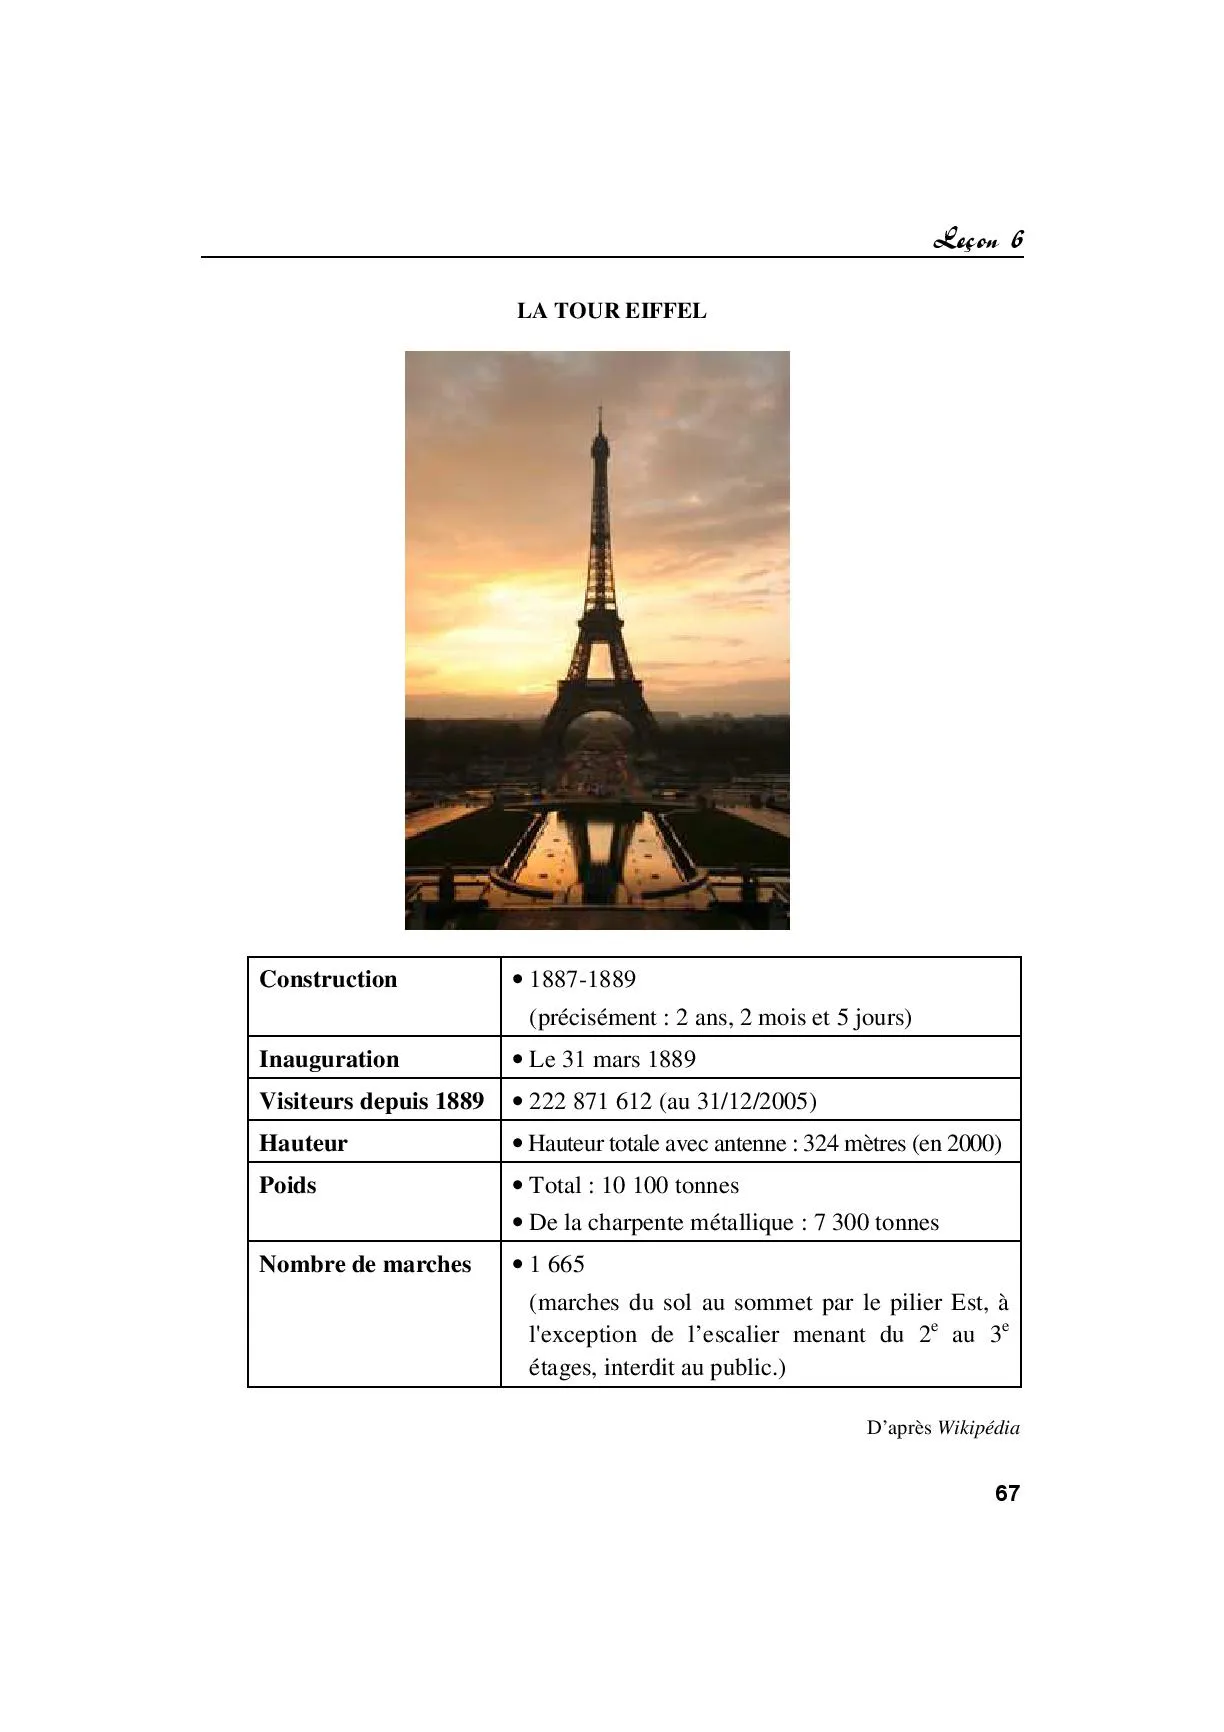 Leçon 6: Gustave Eiffel